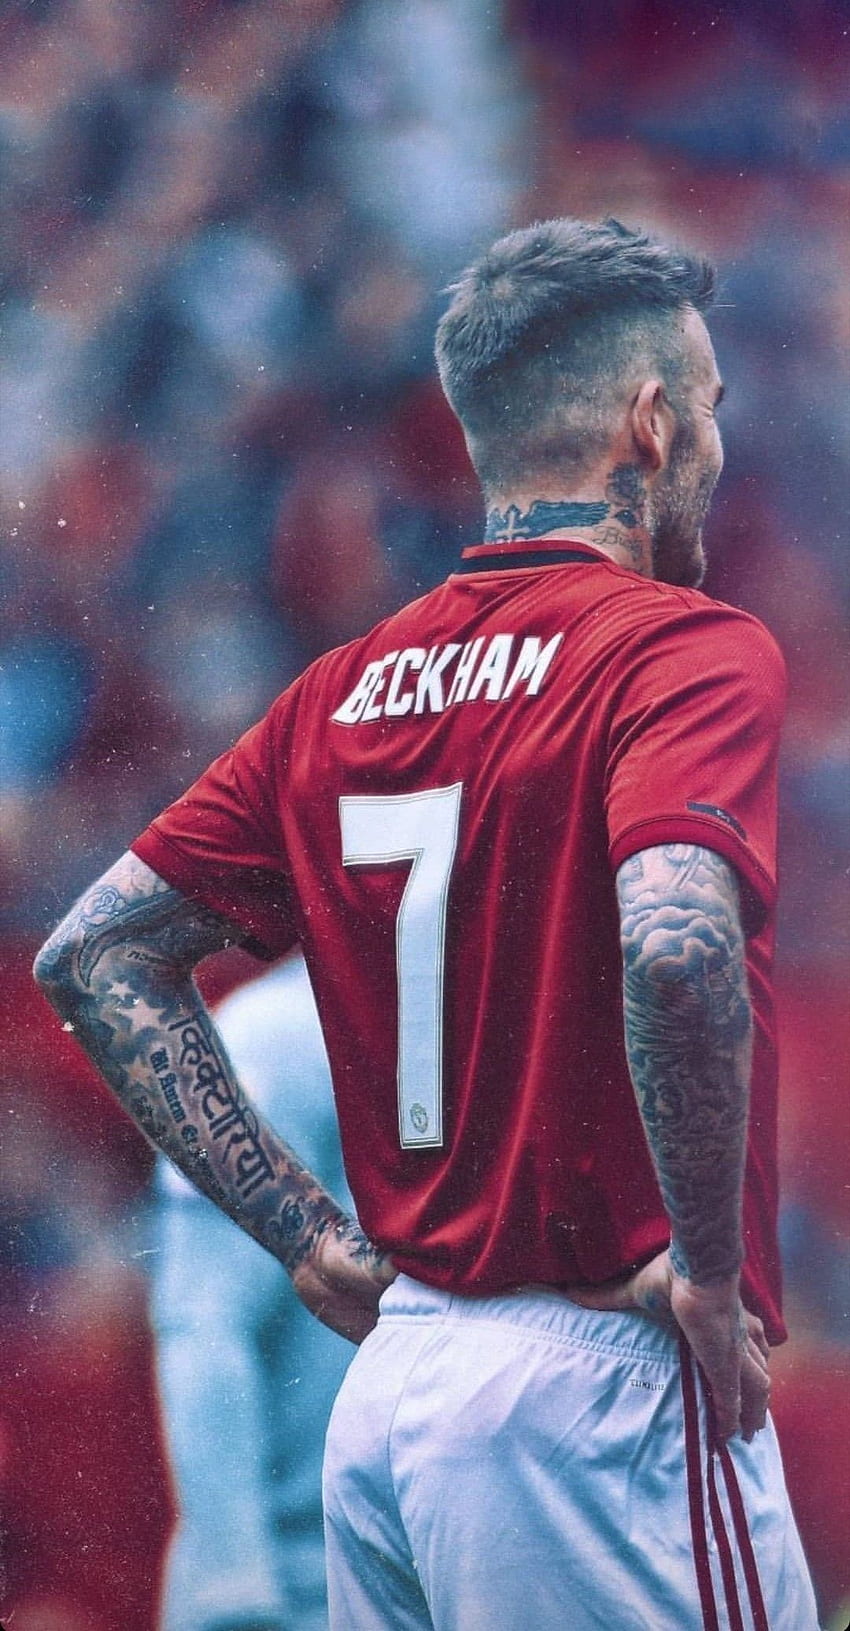 David Beckham - bóng đá Bạn là fan hâm mộ của David Beckham? Những khoảnh khắc thi đấu của anh trên sân cỏ sẽ khiến bạn rung động. Hình ảnh chân thực và hoàn hảo về Beckham sẽ đưa bạn đến với những trận đấu đẹp nhất của anh.